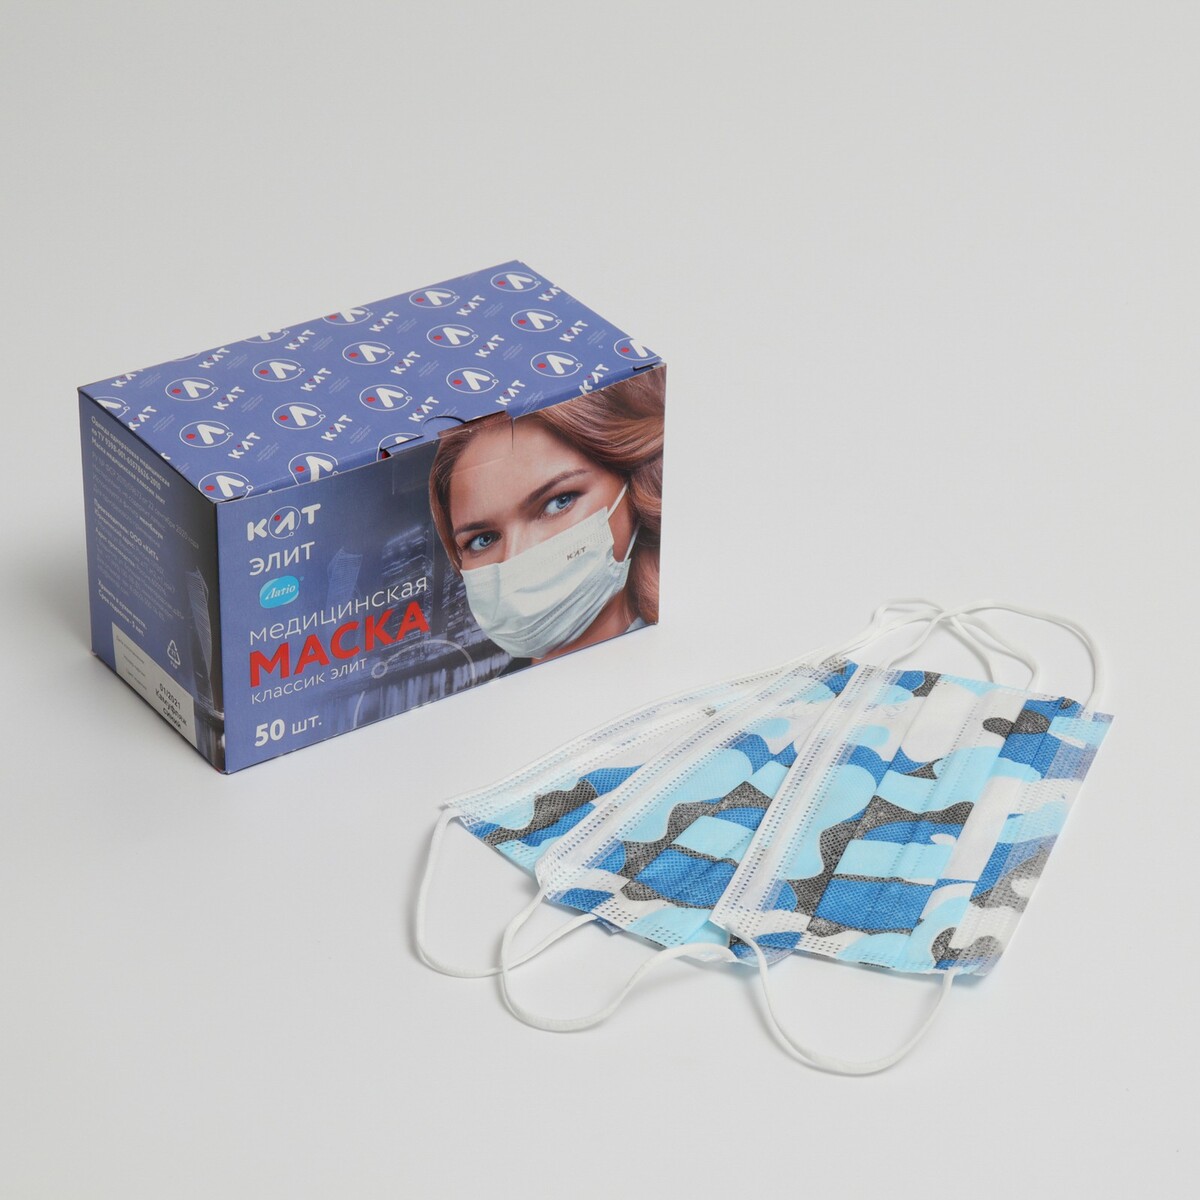 Маска медицинская latio синий камуфляж, 2 фиксатора формы, 50 шт картонный блок маска для плавания salvas geo md mask ca140s1bysth синий